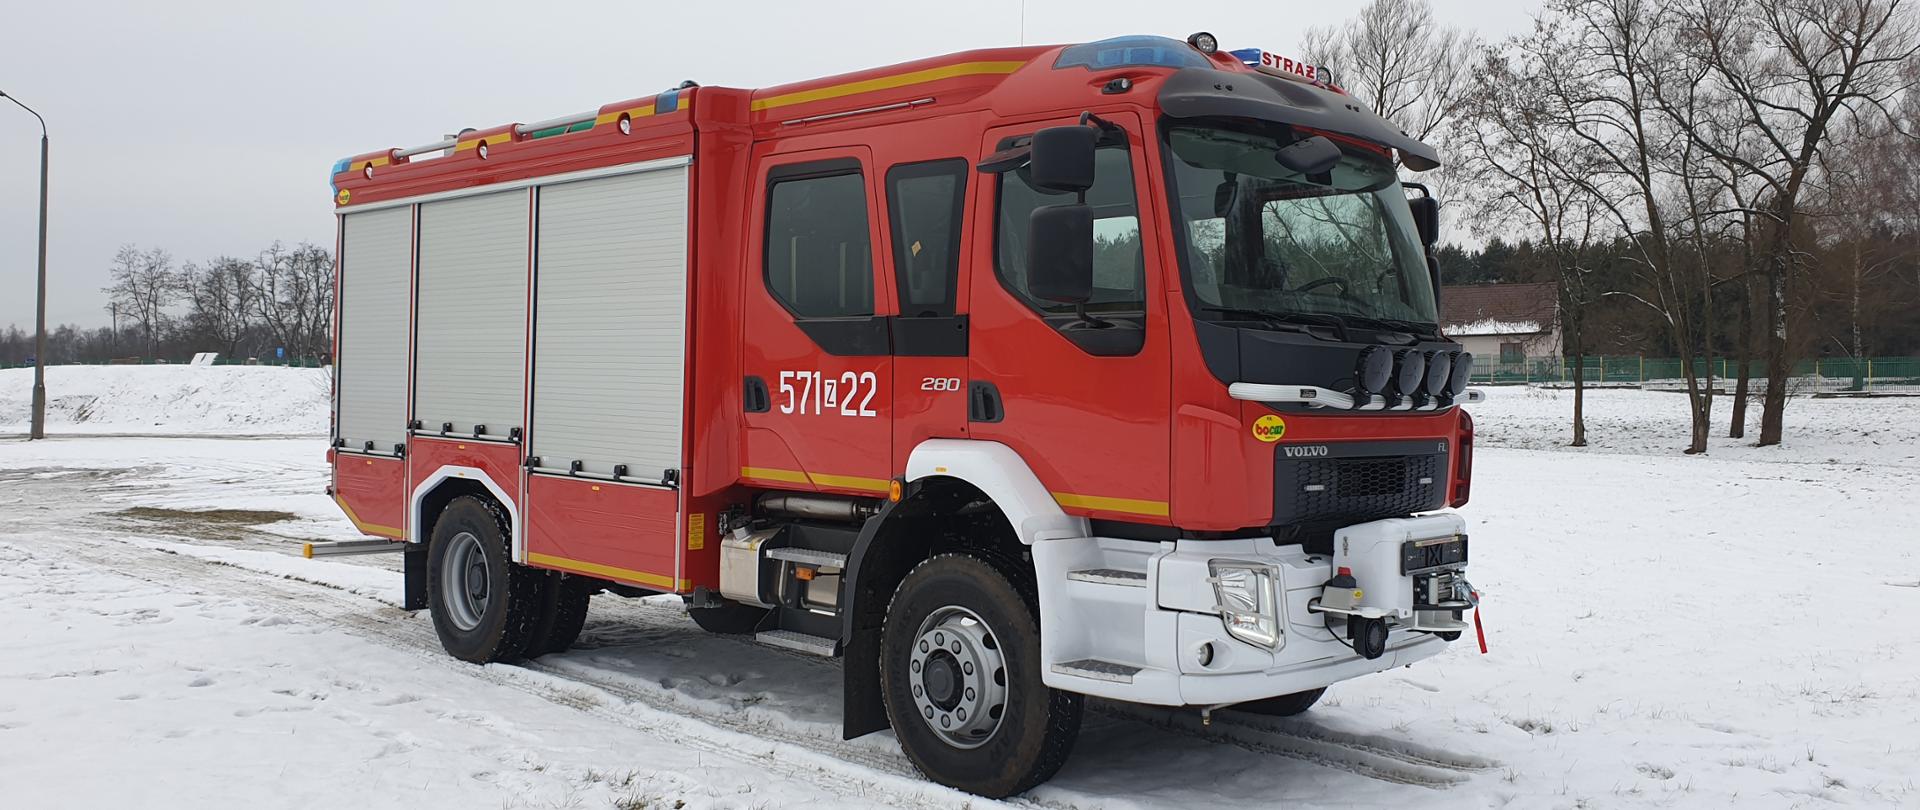 Na zdjęciu widać samochód ratowniczo gaśniczy Volvo o numerach operacyjnych 571z22, należący do Komendy Powiatowej Państwowej Straży Pożarnej w Wałczu. Samochód stoi na zaśnieżonym placu. Pojazd widać pod kątem, przód i prawy bok.